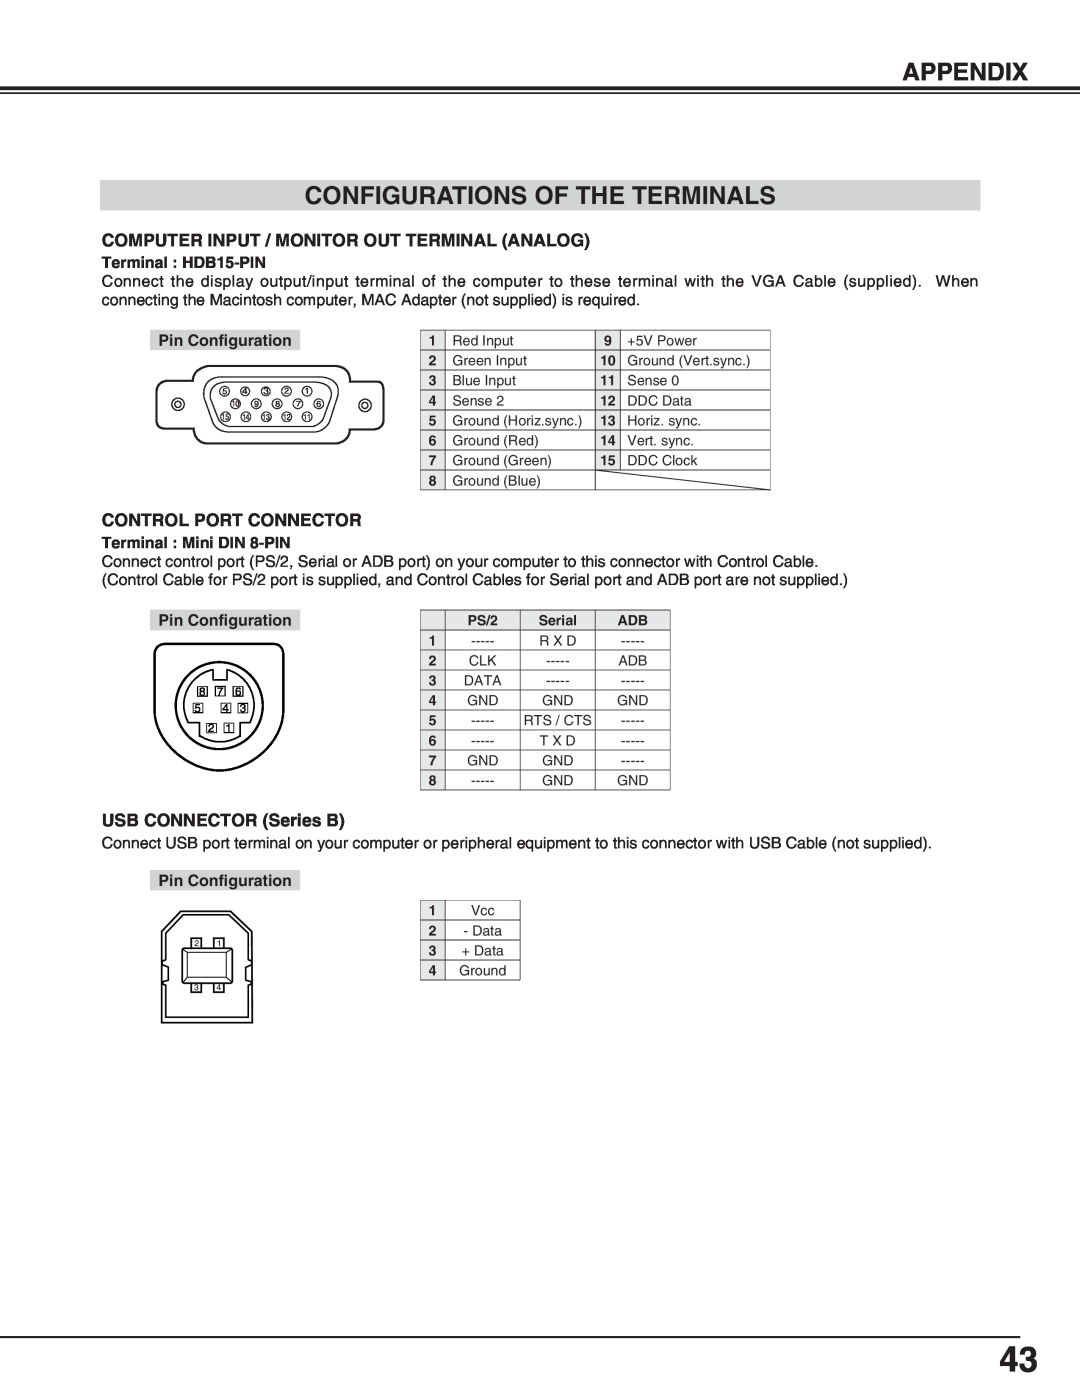 BOXLIGHT cp-16t Appendix Configurations Of The Terminals, Terminal HDB15-PIN, Pin Configuration, Terminal Mini DIN 8-PIN 